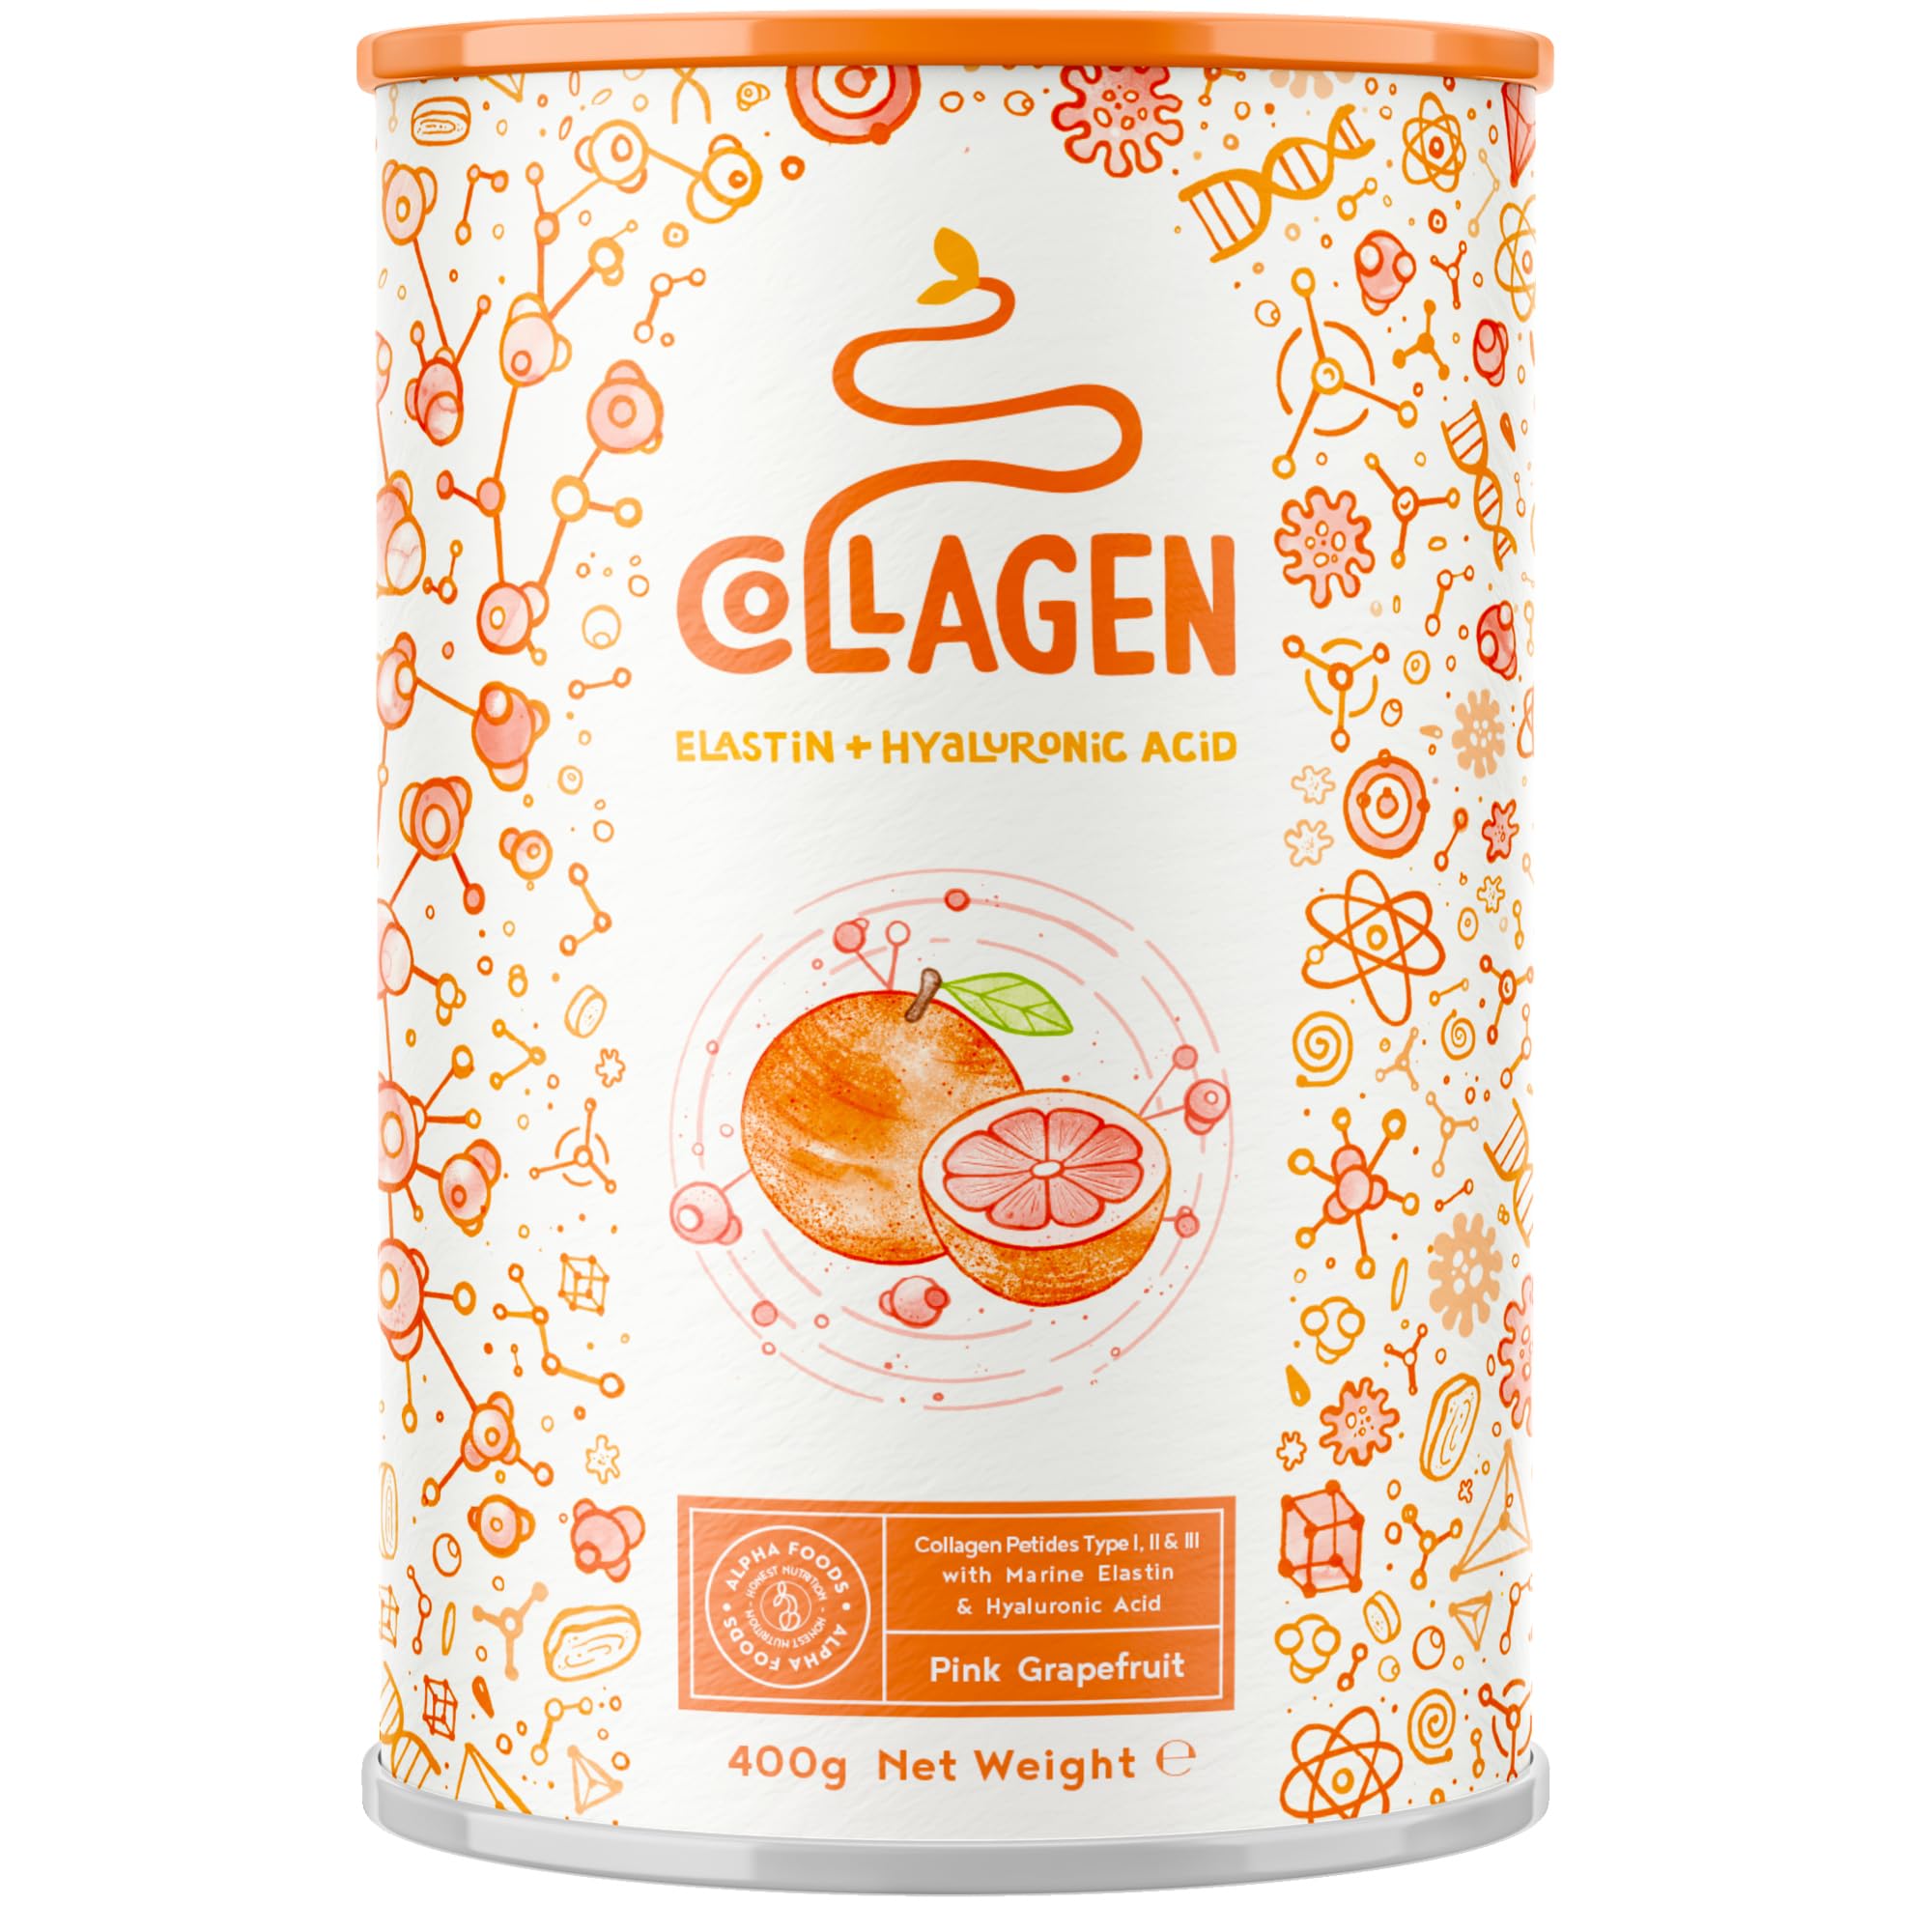 Alpha Foods Collagen Pulver (400g) - Kollagen Hydrolysat Peptide Type I, II & III - Hochdosiert Kollagenpulver mit Hyaluronsäure und Elastin - Pink Grapefruit-Geschmack - Aus Deutschland